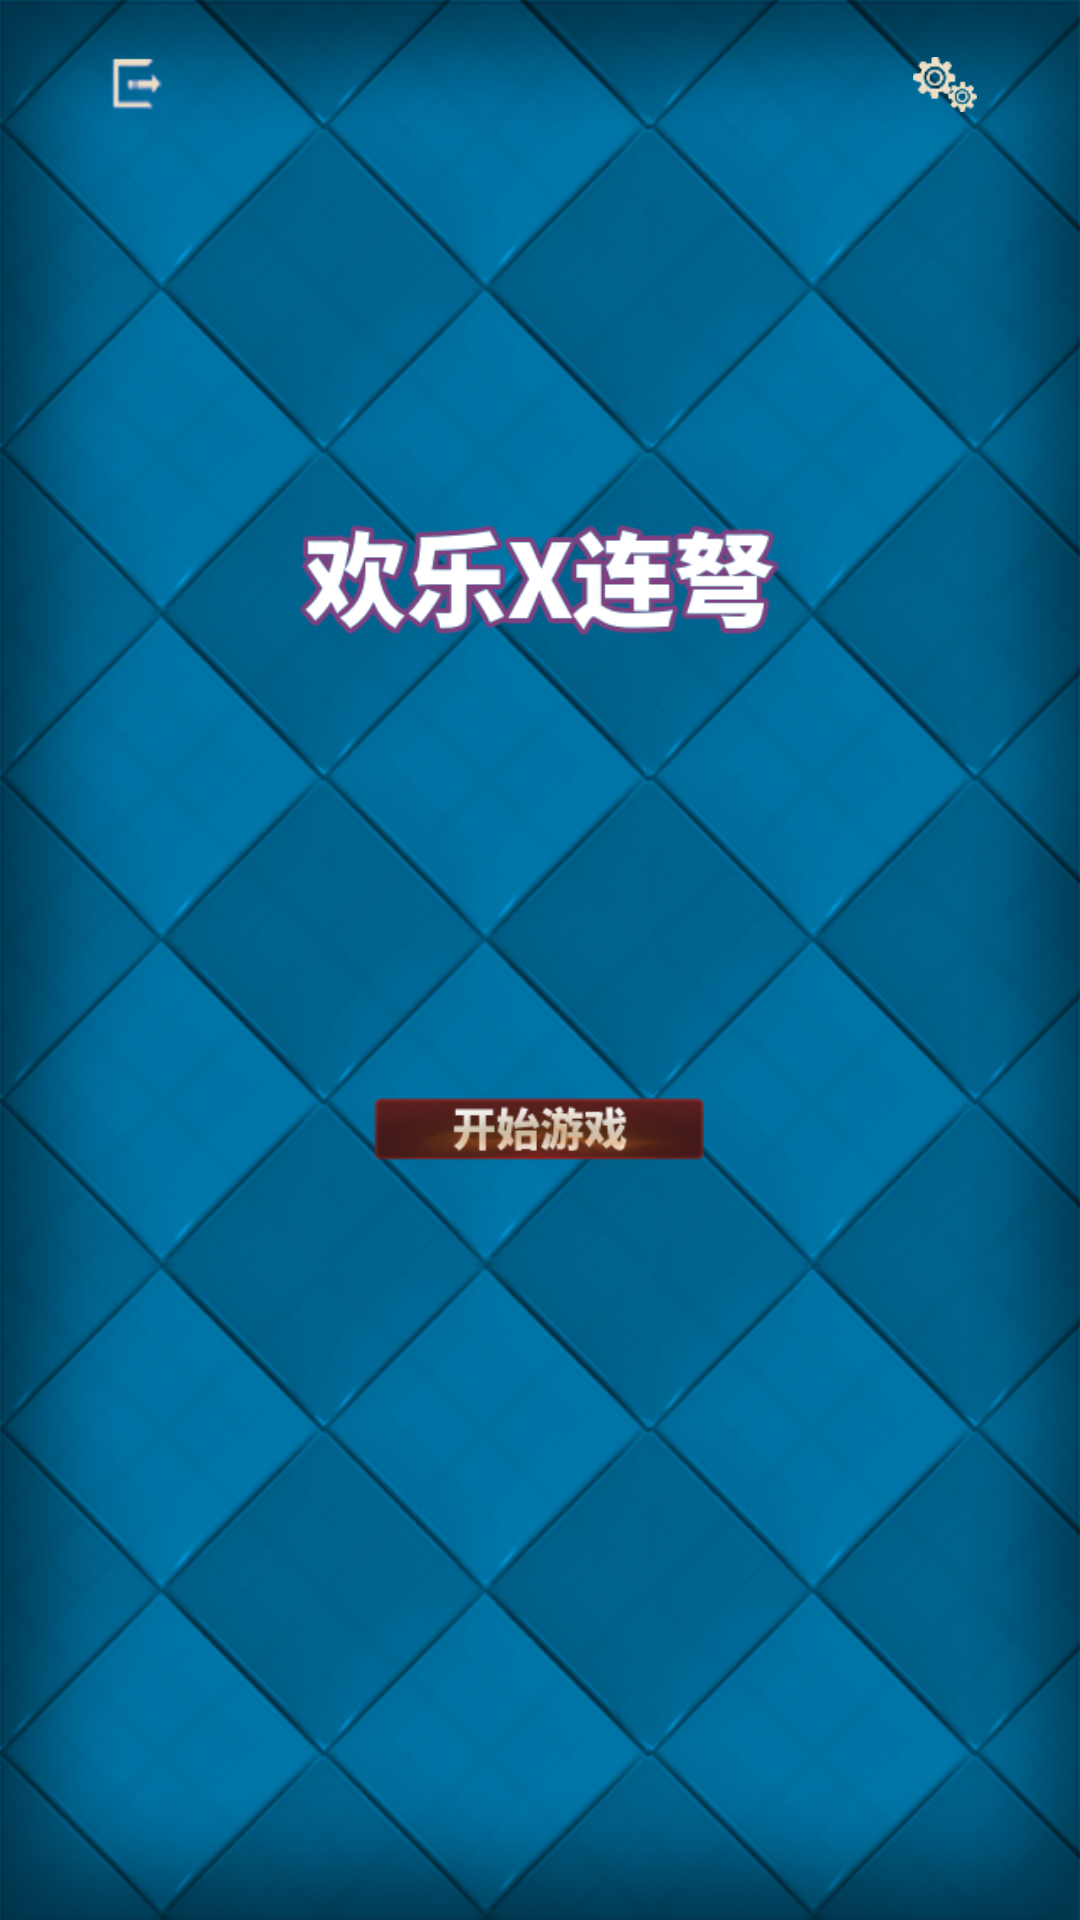 Screenshot 1 of 歡樂X連弩 2.0.0.5